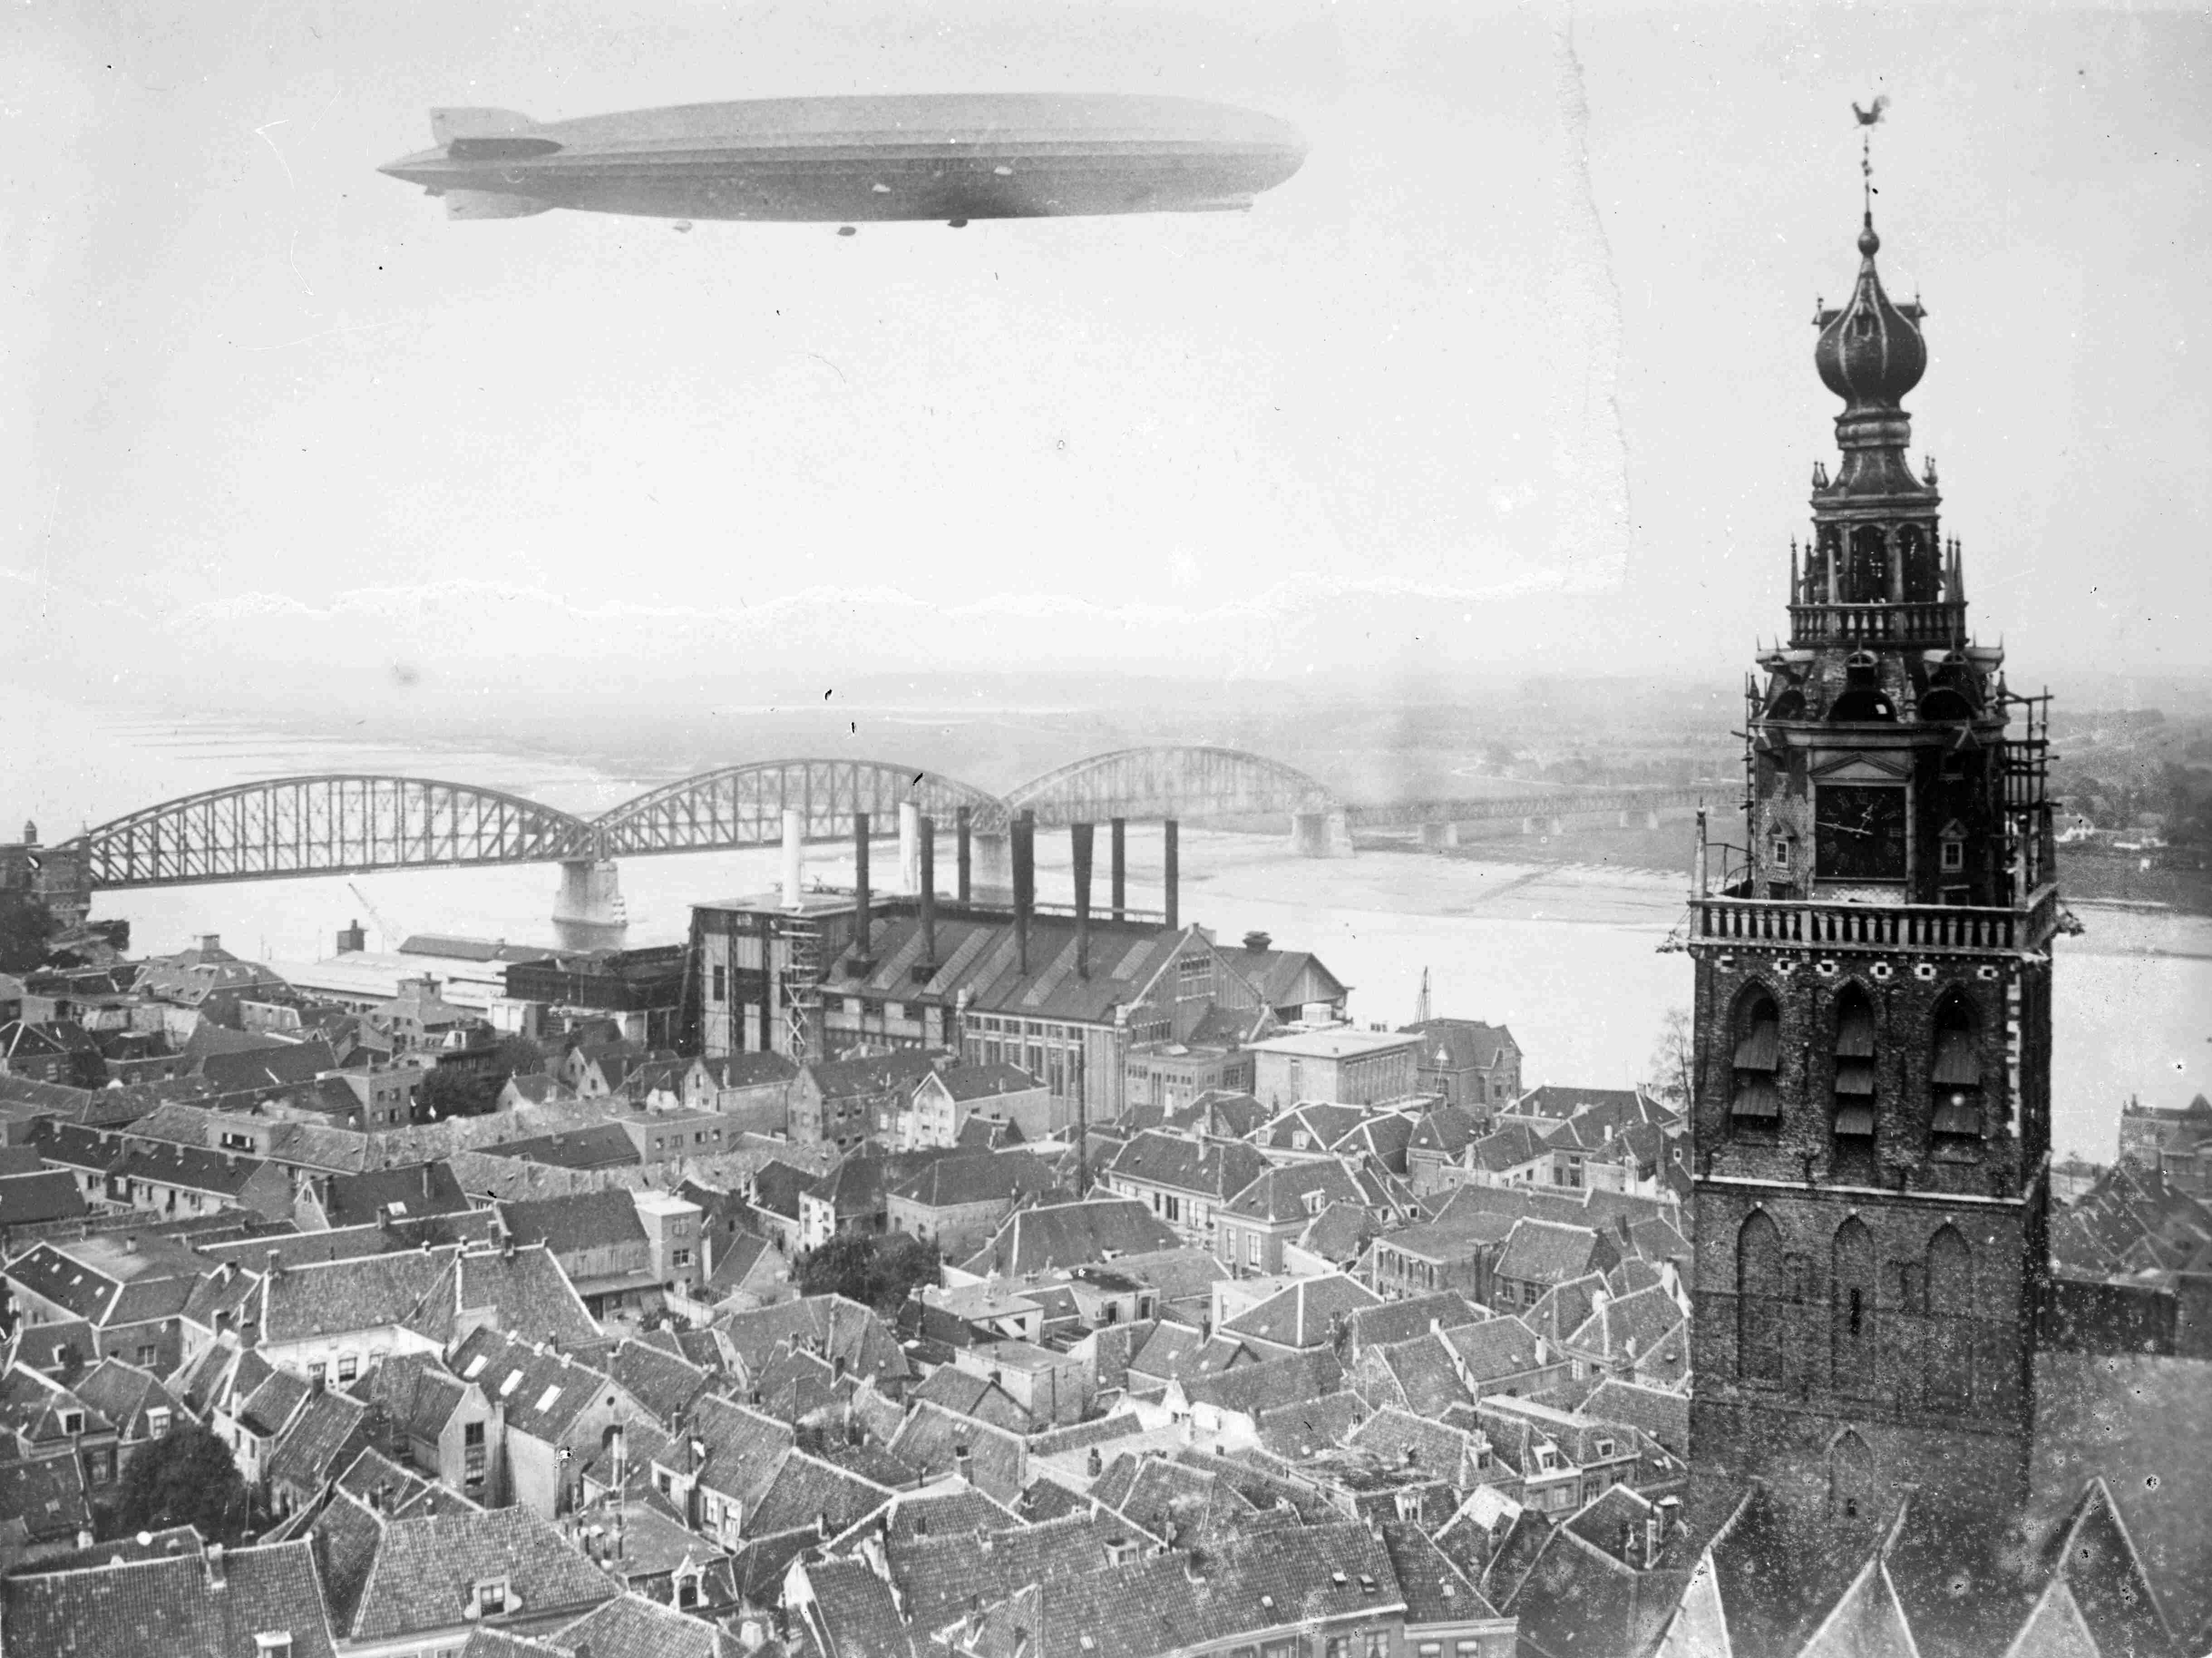 Op zondag 13 October maakte het luchtschip de Graf Zeppelin een rondvlucht boven Nederland en passeerde Nijmegen om 12.50 uur; de zeppelin trok overal grote publieke belangstelling